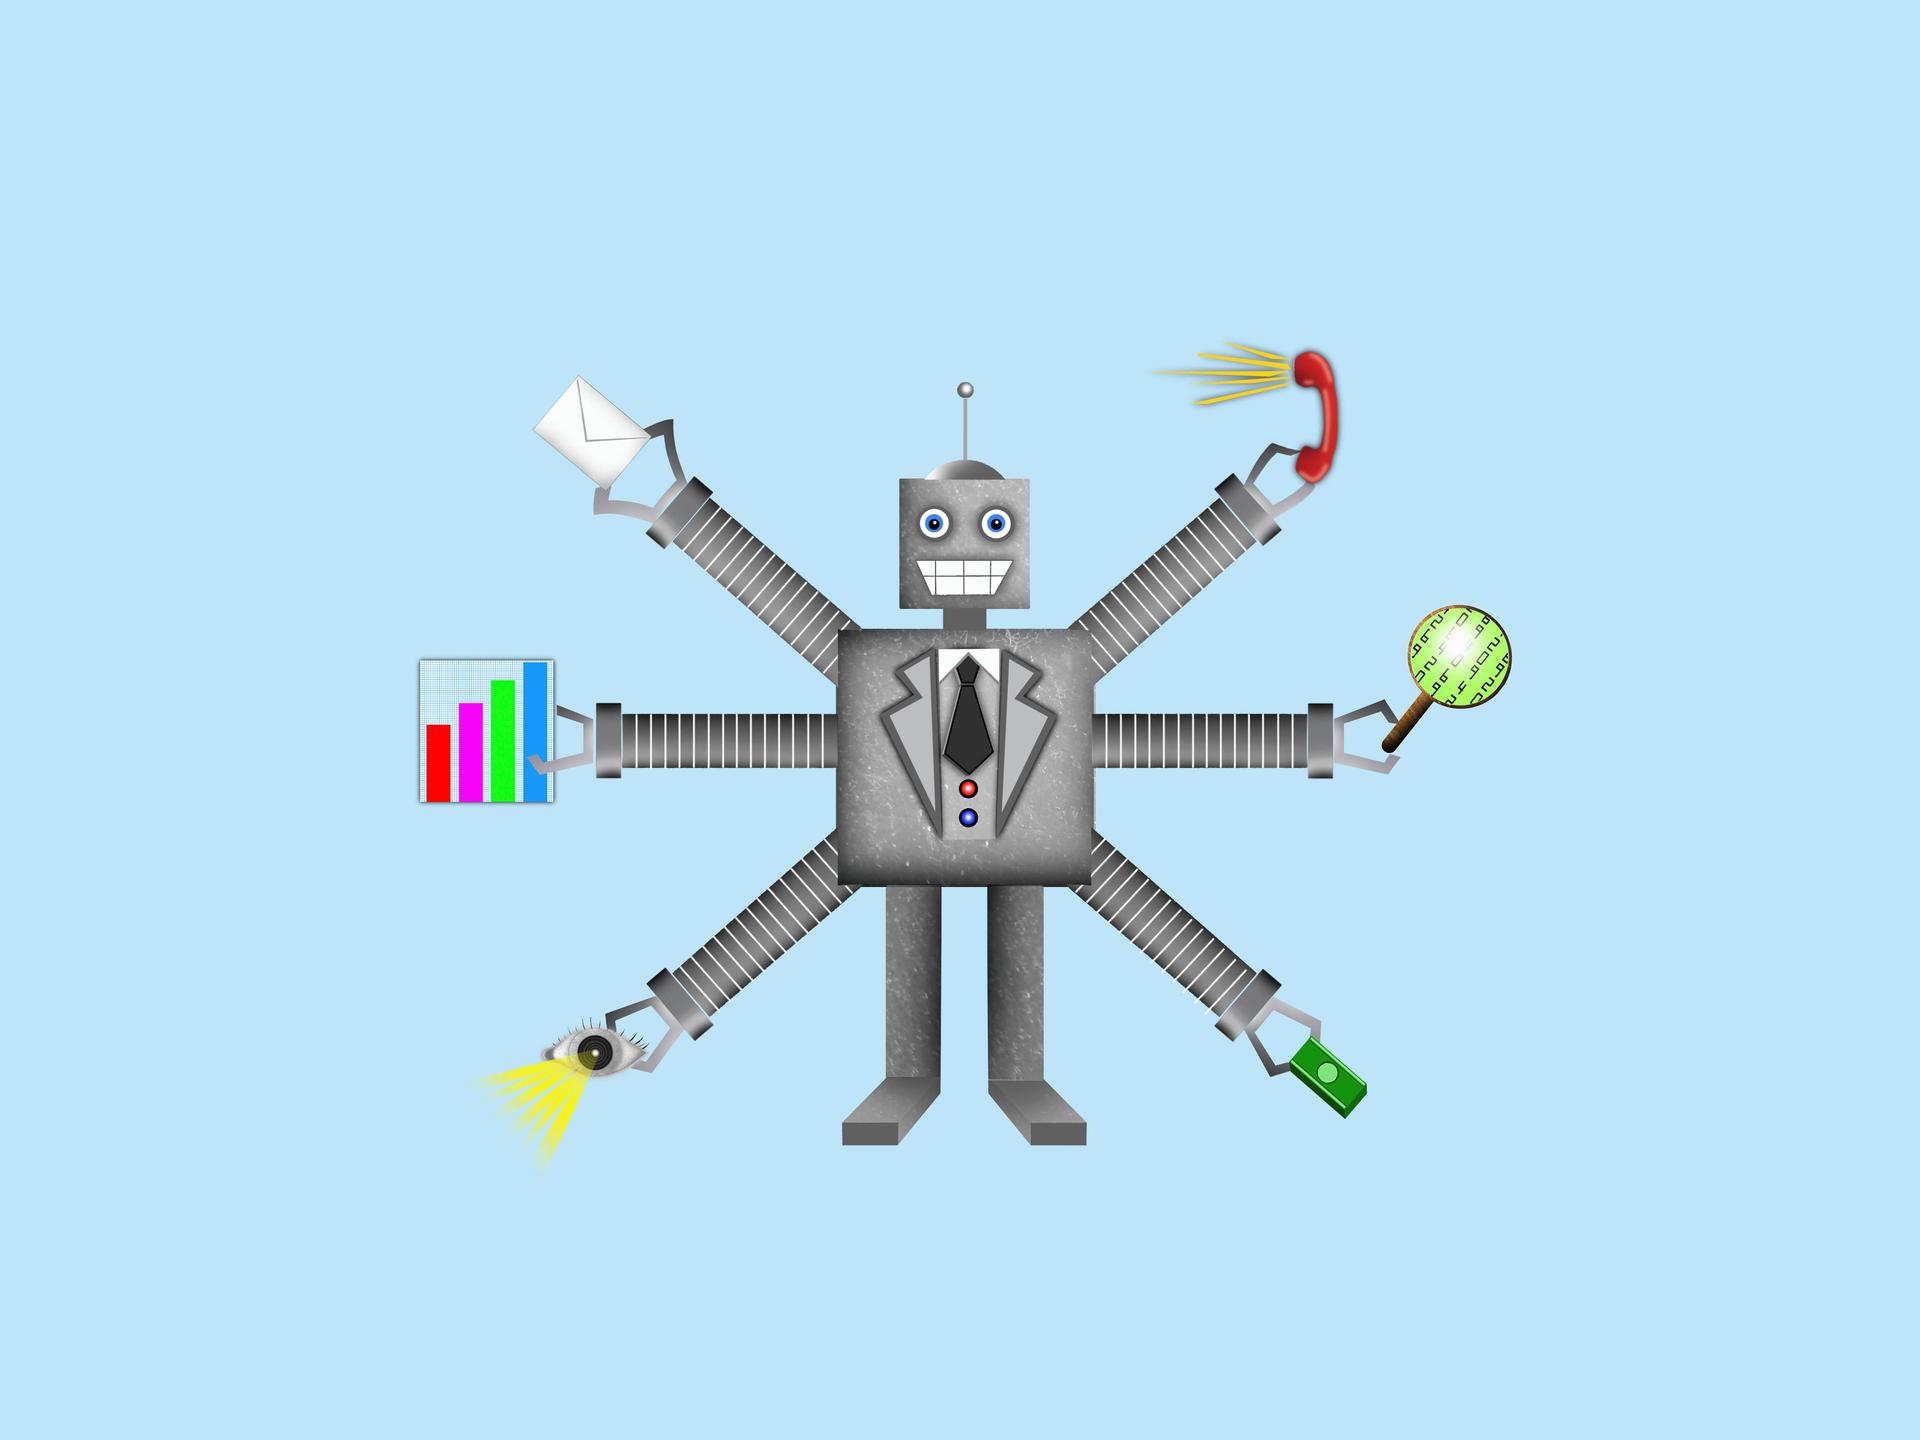 Grafik eines Roboters mit mehreren Armen, die verschiedene Arbeitsutensilien halten.